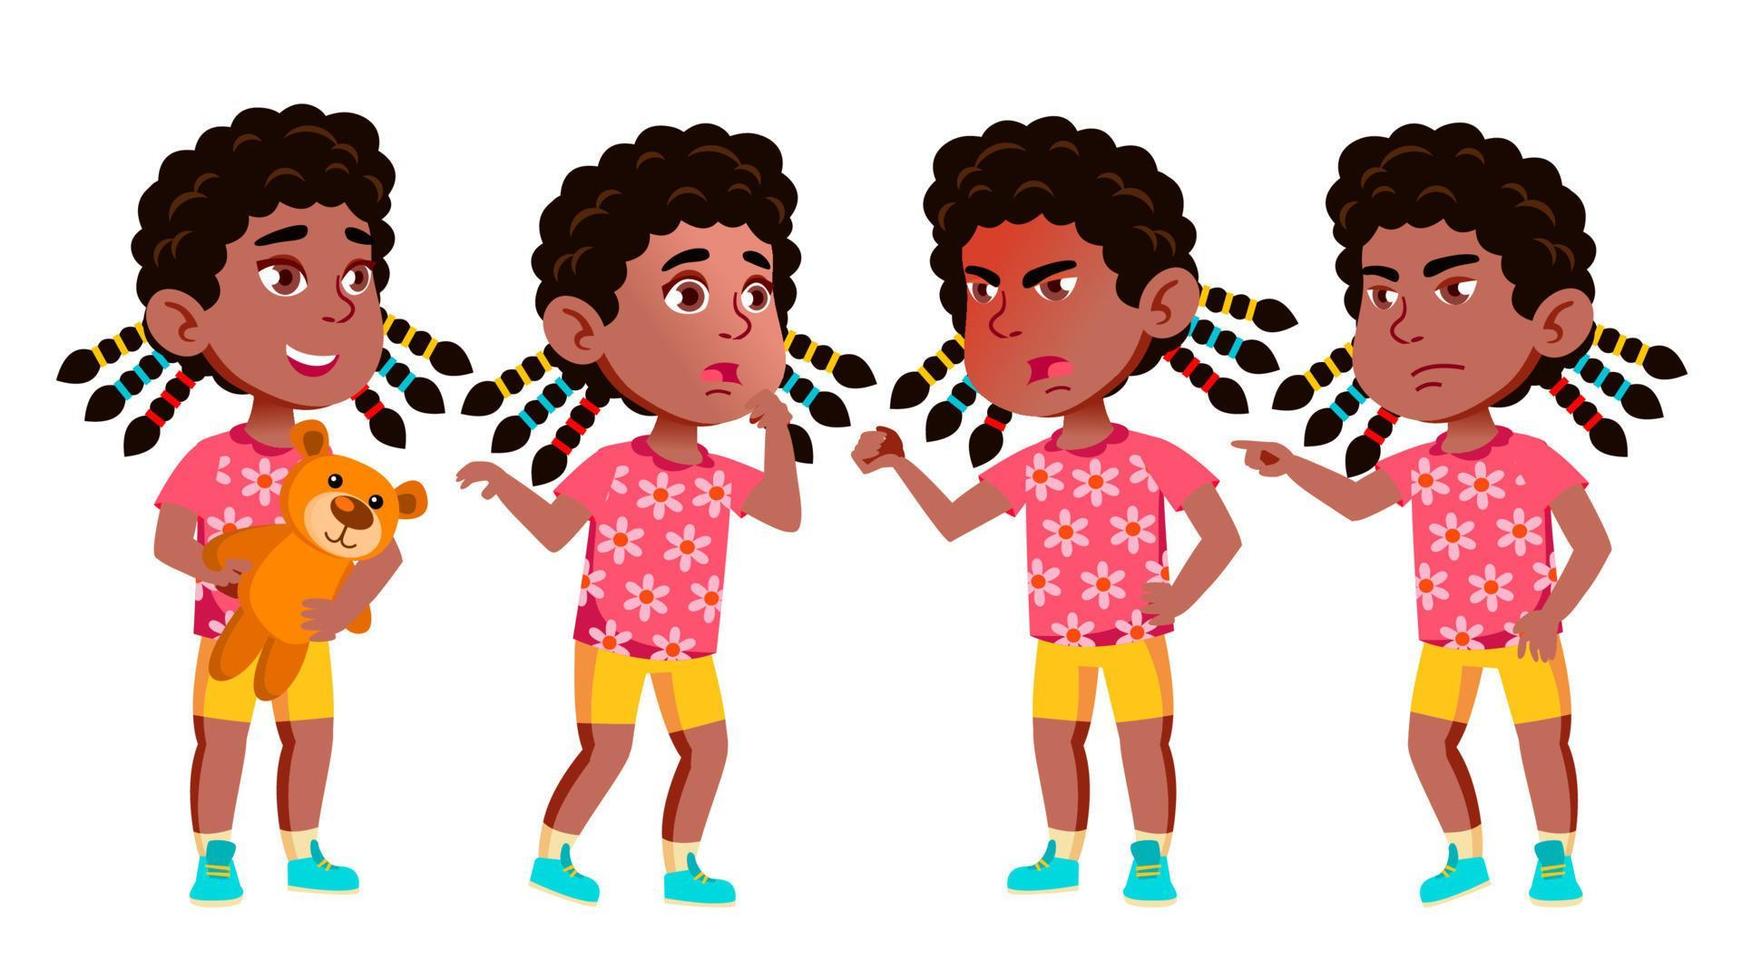 Mädchen-Kindergarten-Kind-Posen-Set-Vektor. Schwarz. Afroamerikaner. freundliche kleine Kinder. niedlich, komisch. für web, broschüre, plakatdesign. isolierte karikaturillustration vektor